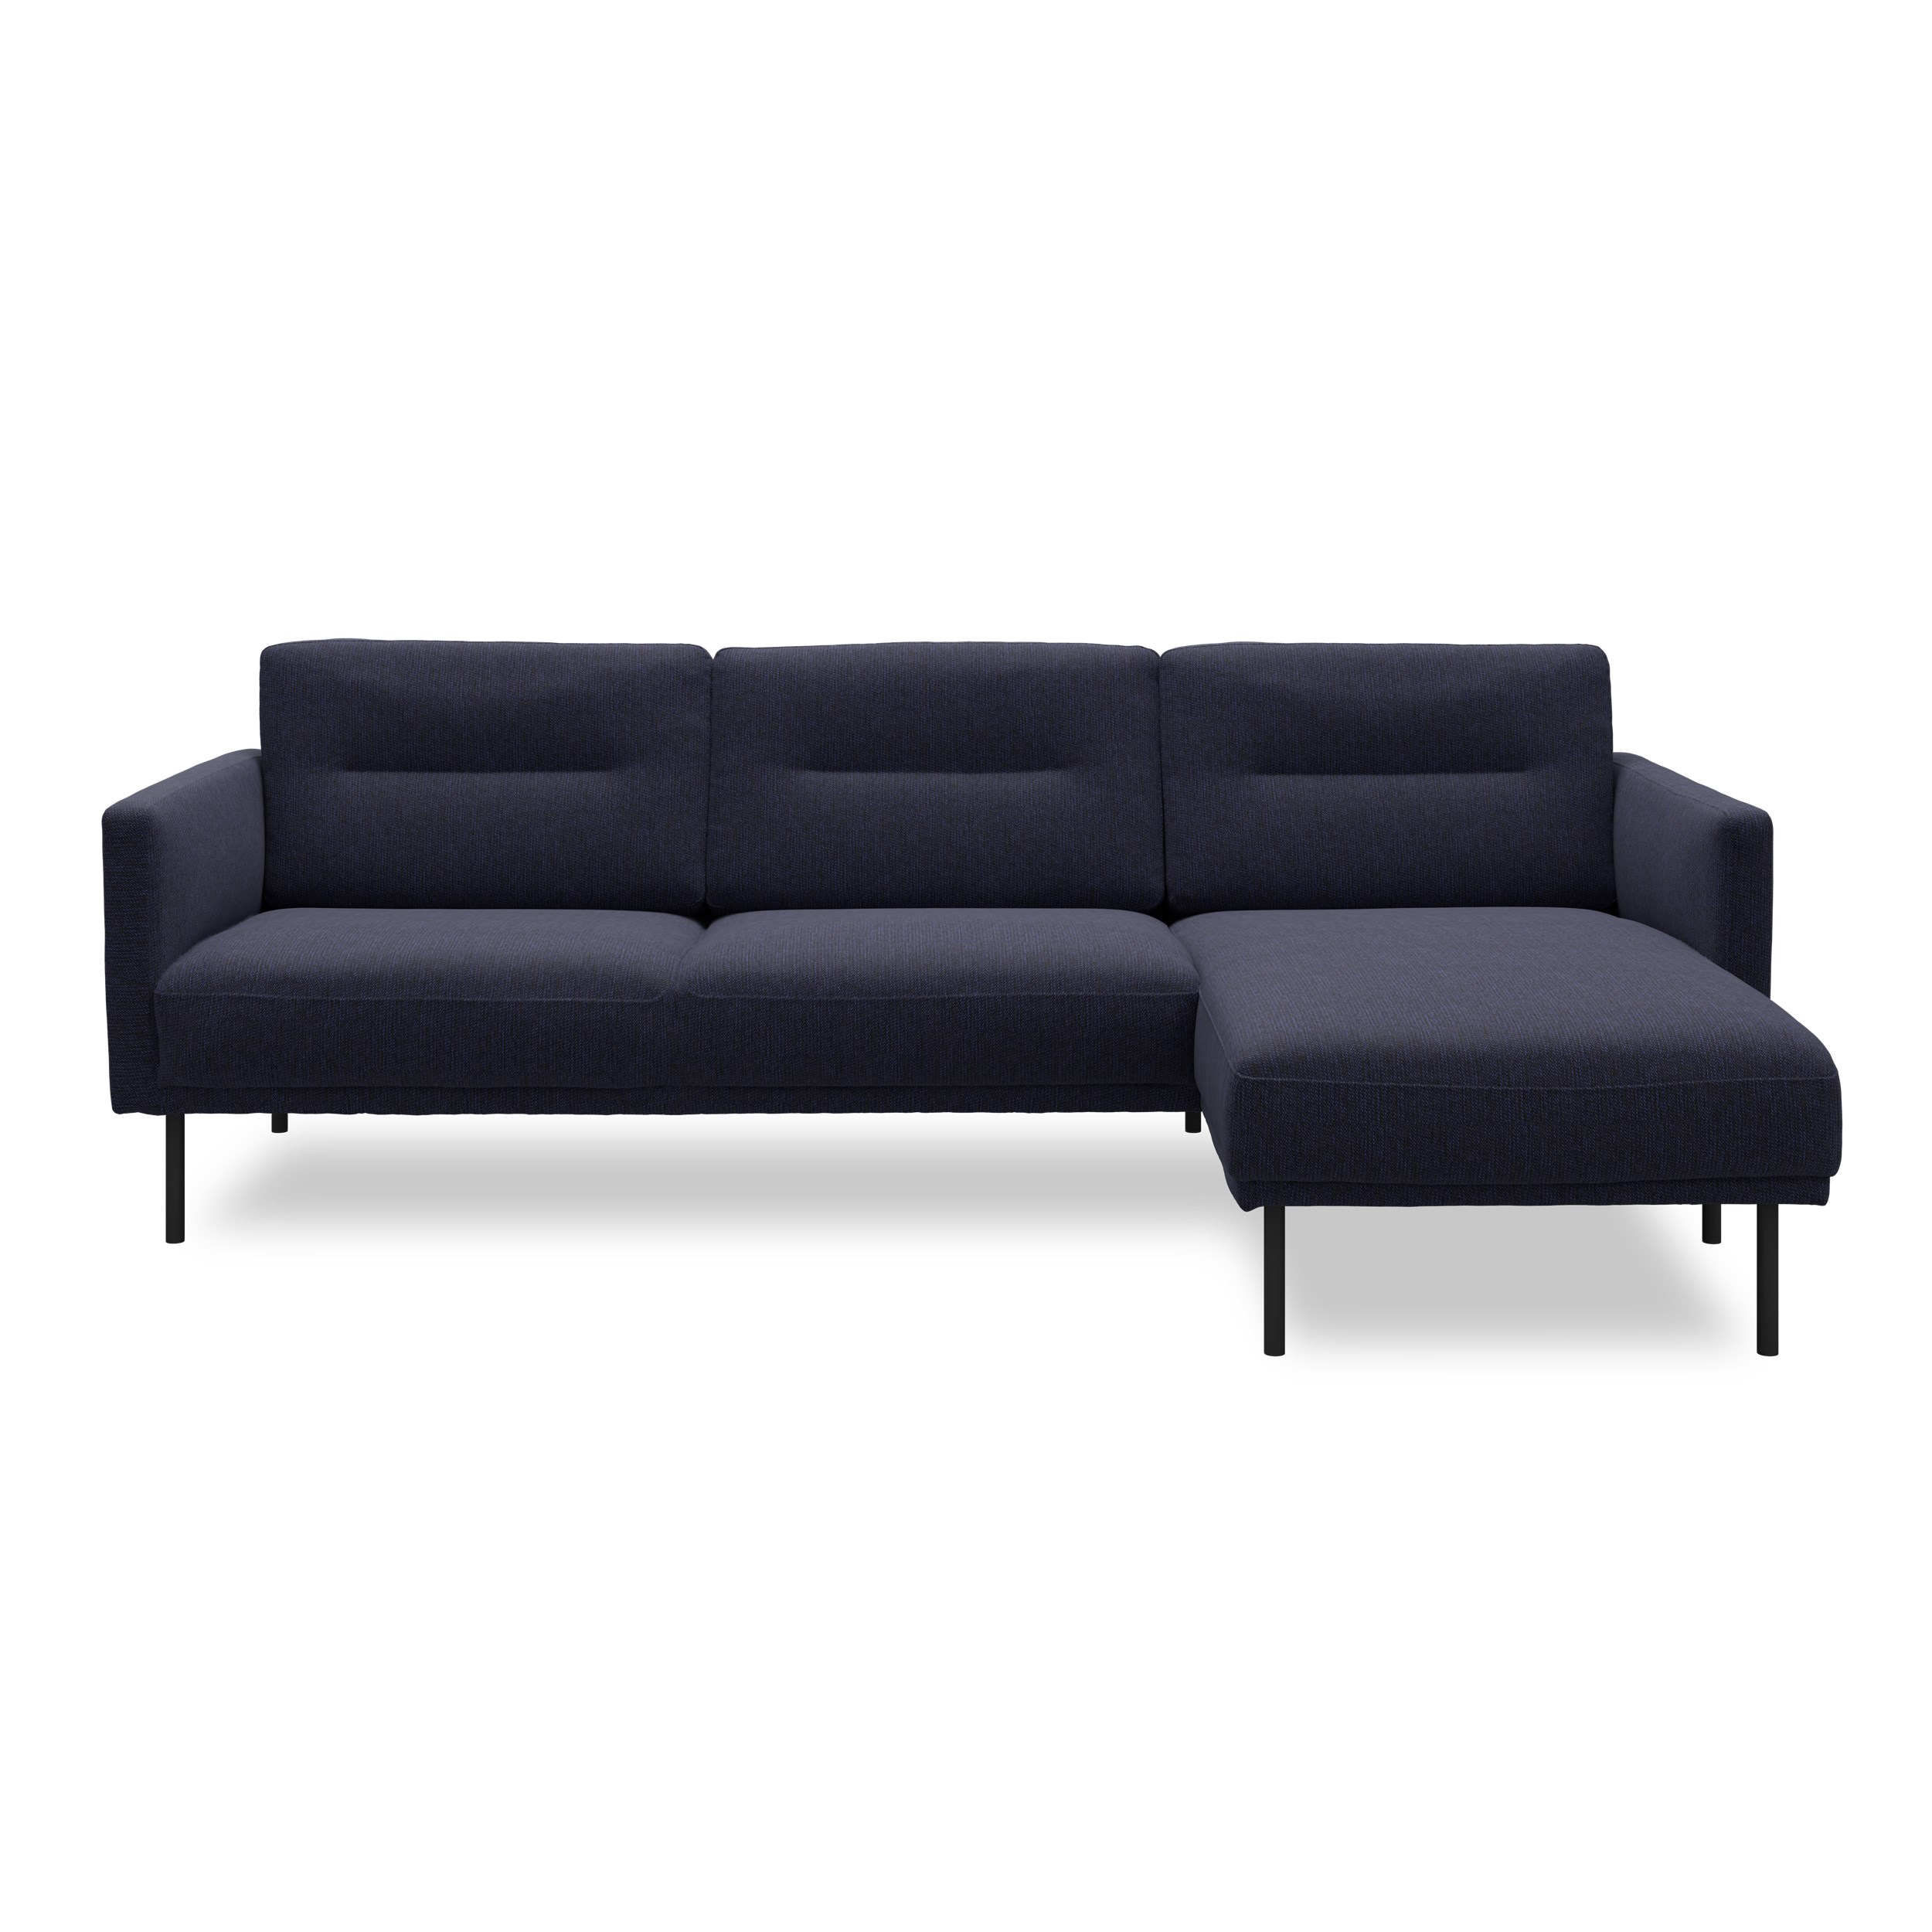 Larvik højrevendt sofa med chaiselong - Hampton 373 Blue stof og ben i sortlakeret metal